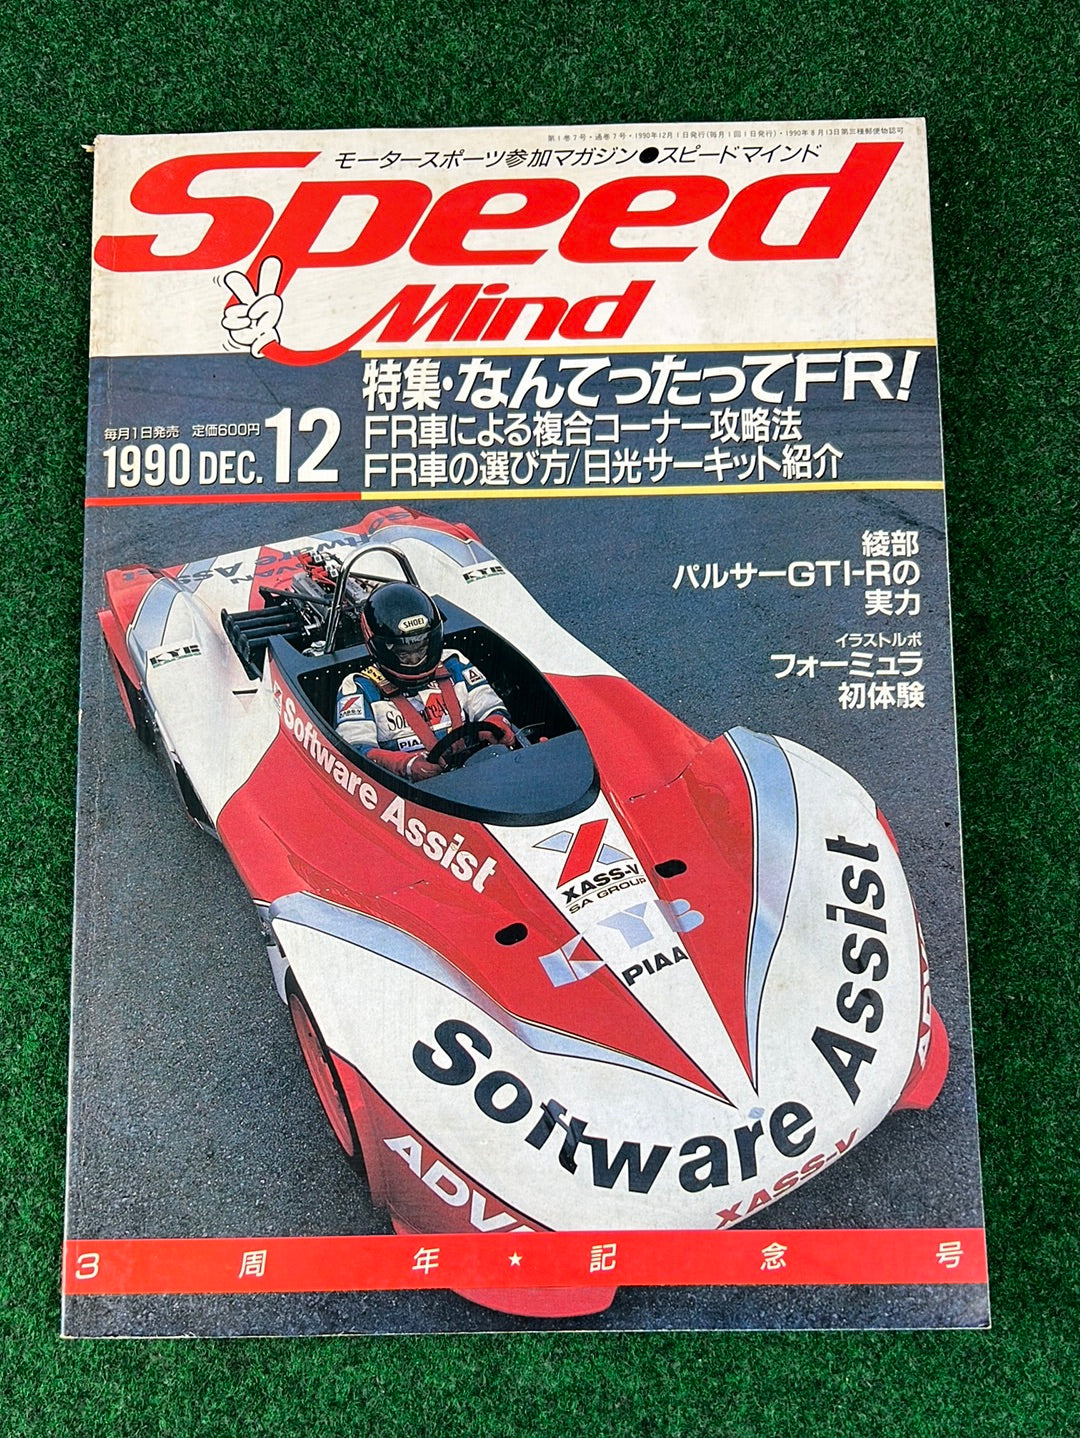 Speed Mind Magazine - December 1990